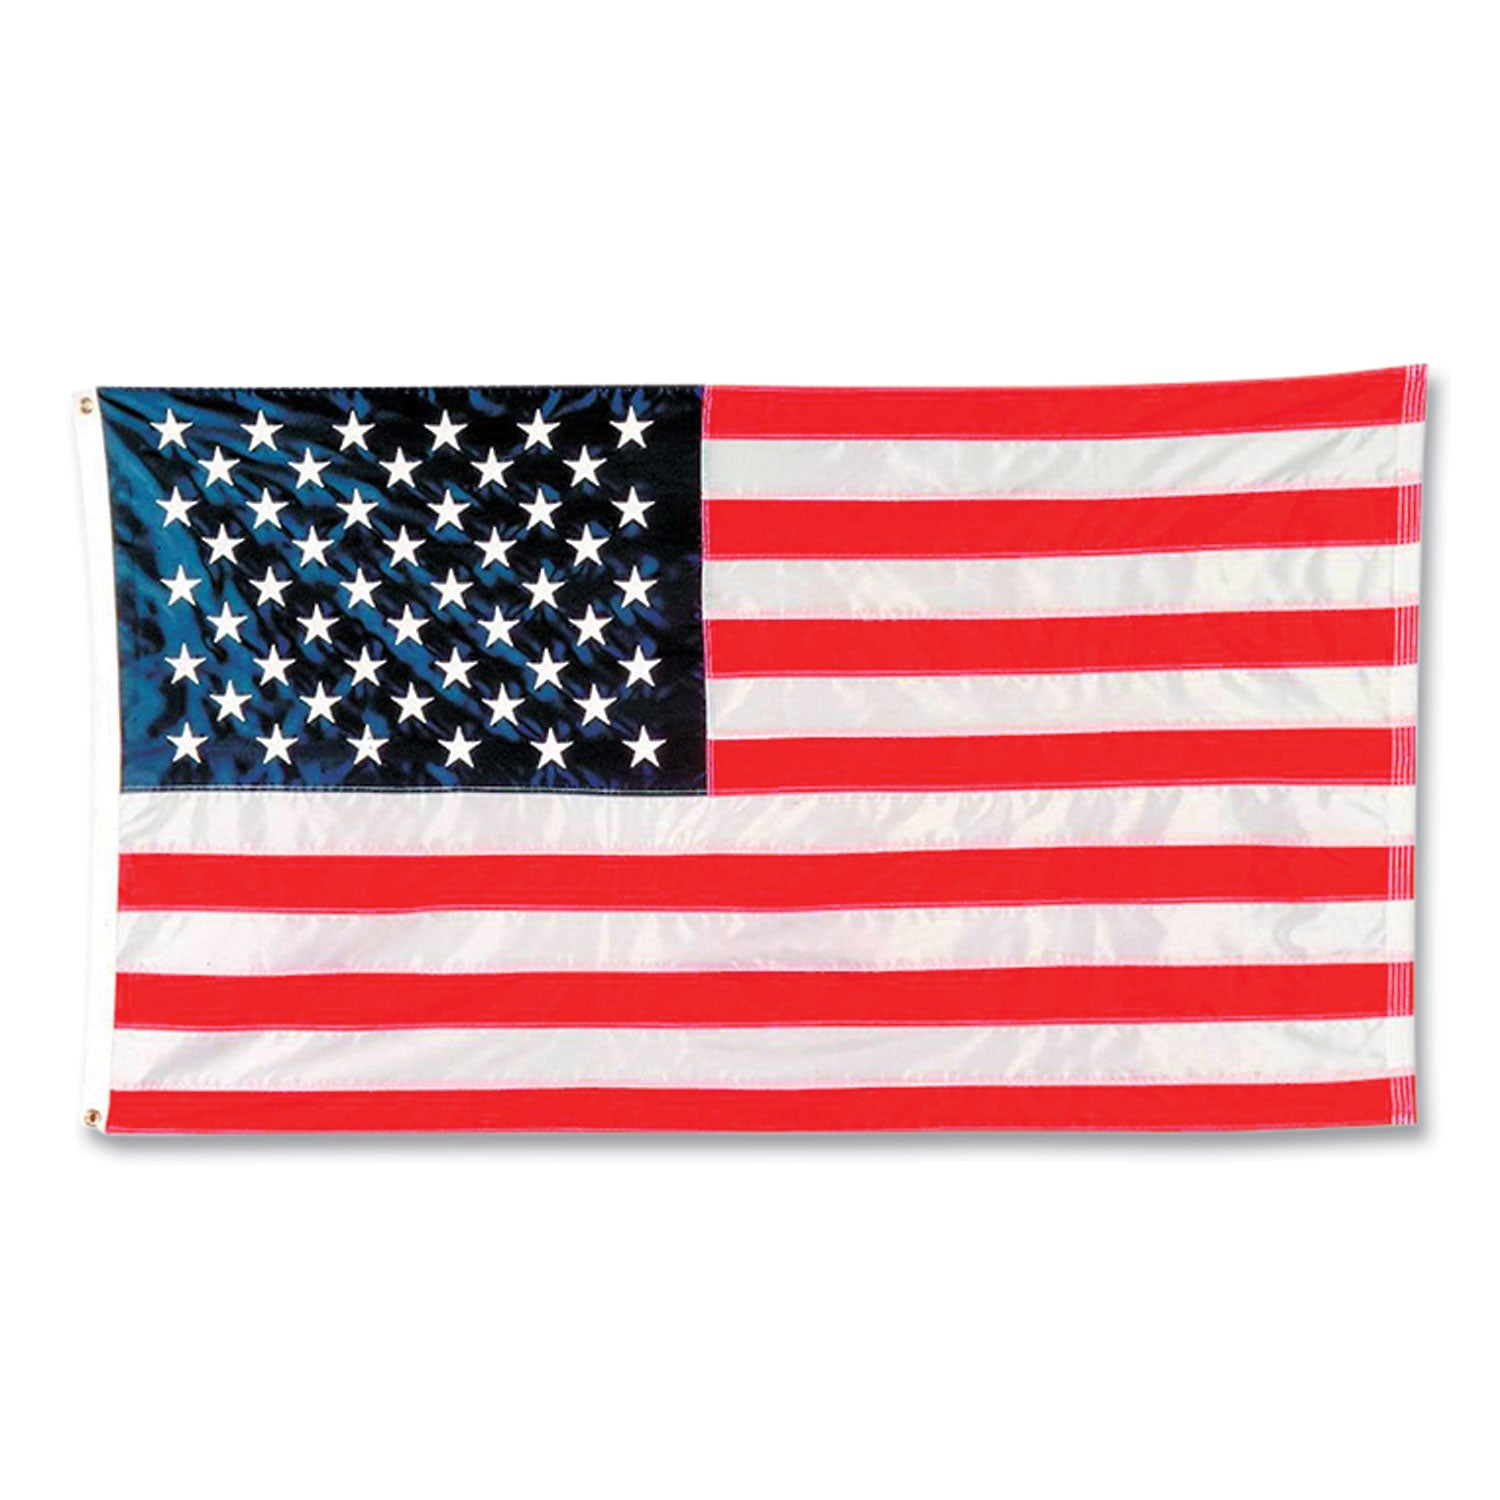 Indoor/Outdoor U.S. Flag, 72" x 48", Nylon - 